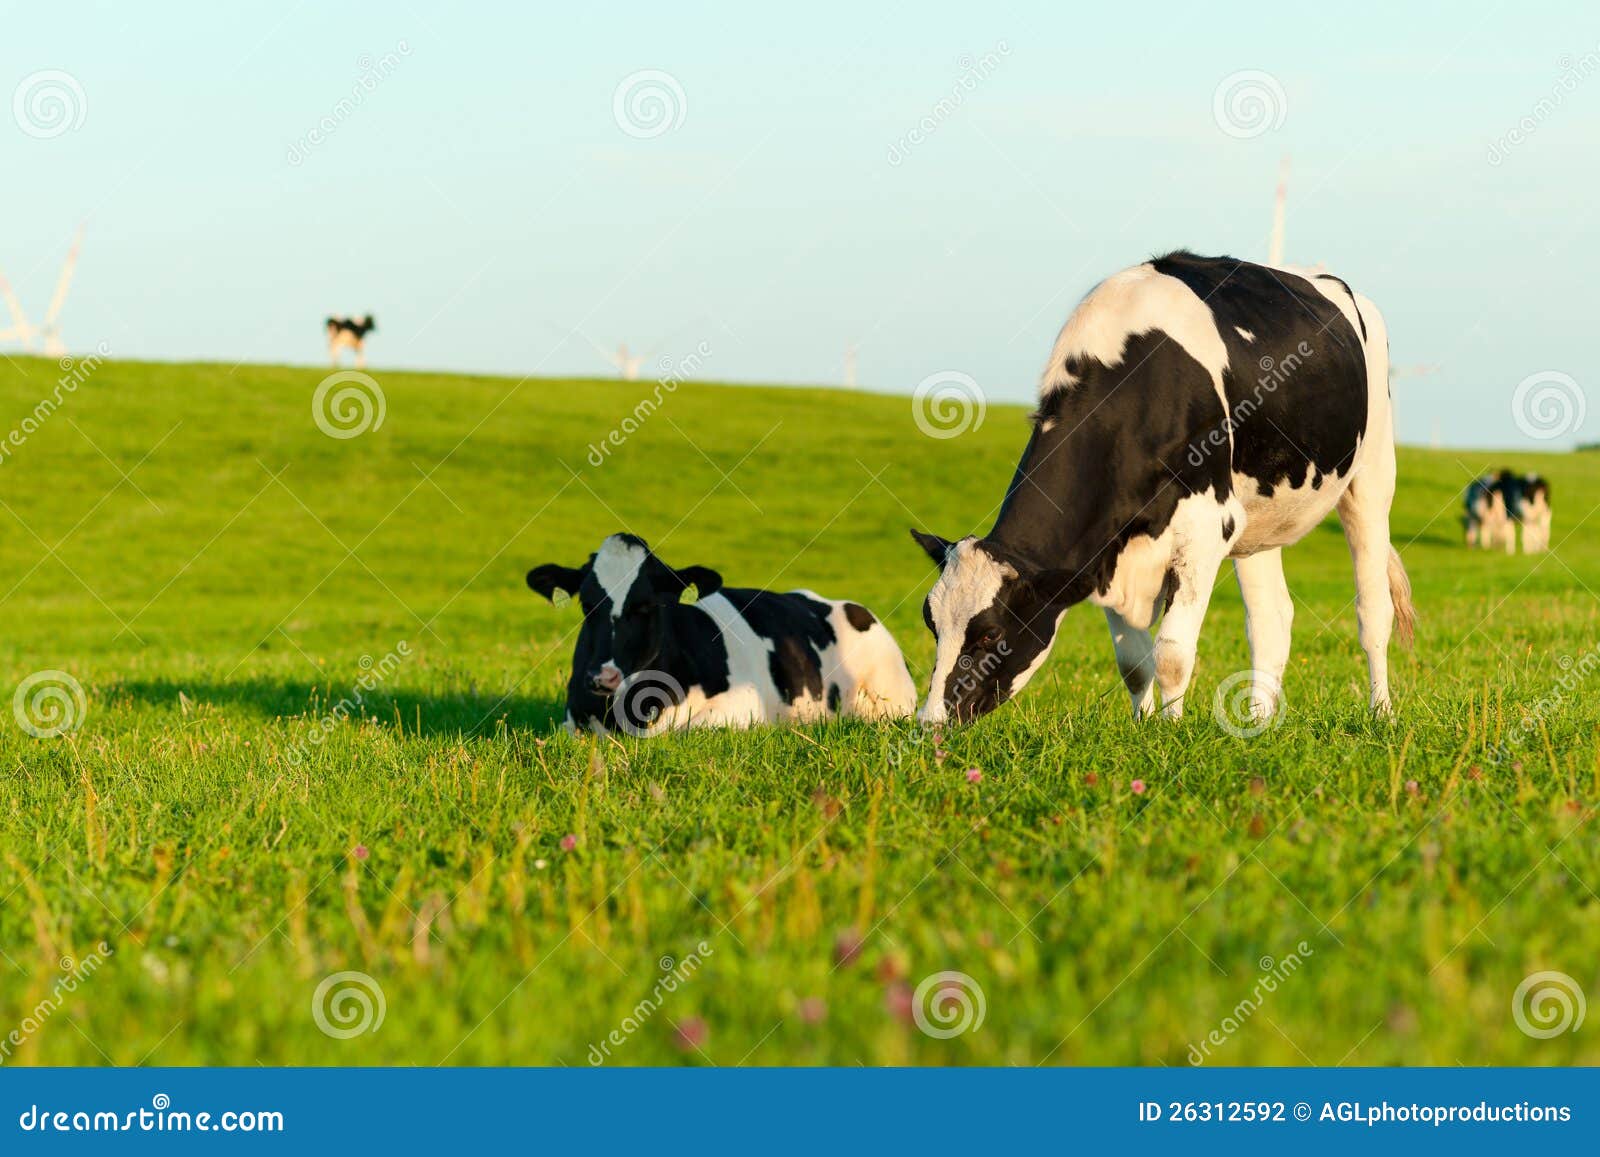 holstein cows grazing